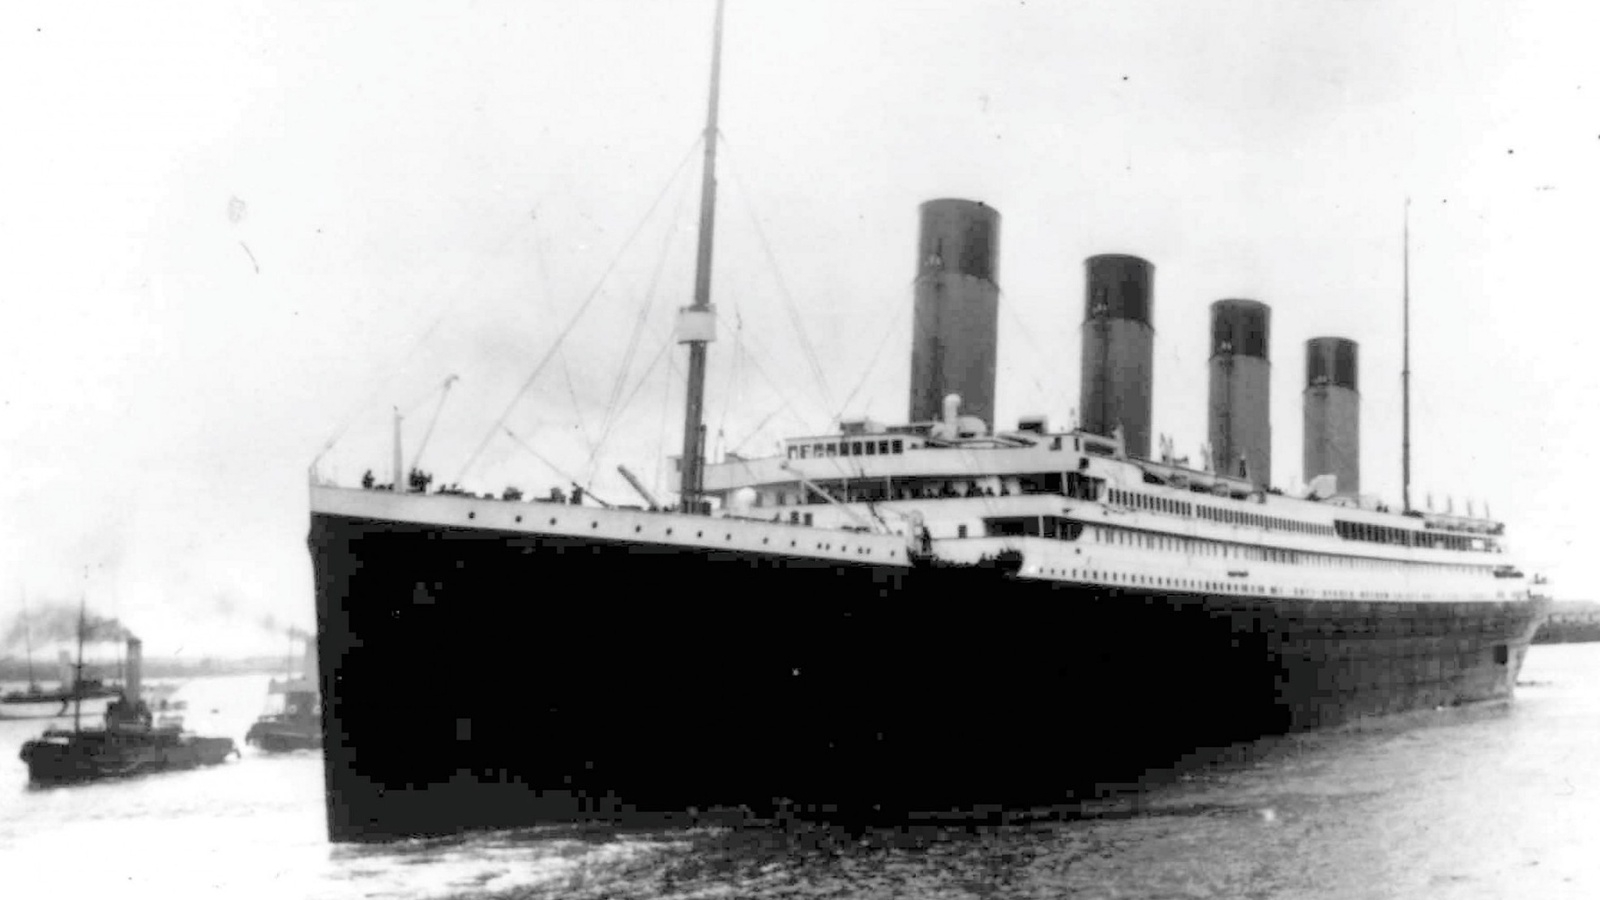 Snart får även skåningarna möjlighet att ta del av skeppet Titanics historia då vandringsutställningen Titanic the Exhibition kommer till Malmö den 21 september.
Foto: TT/arkiv